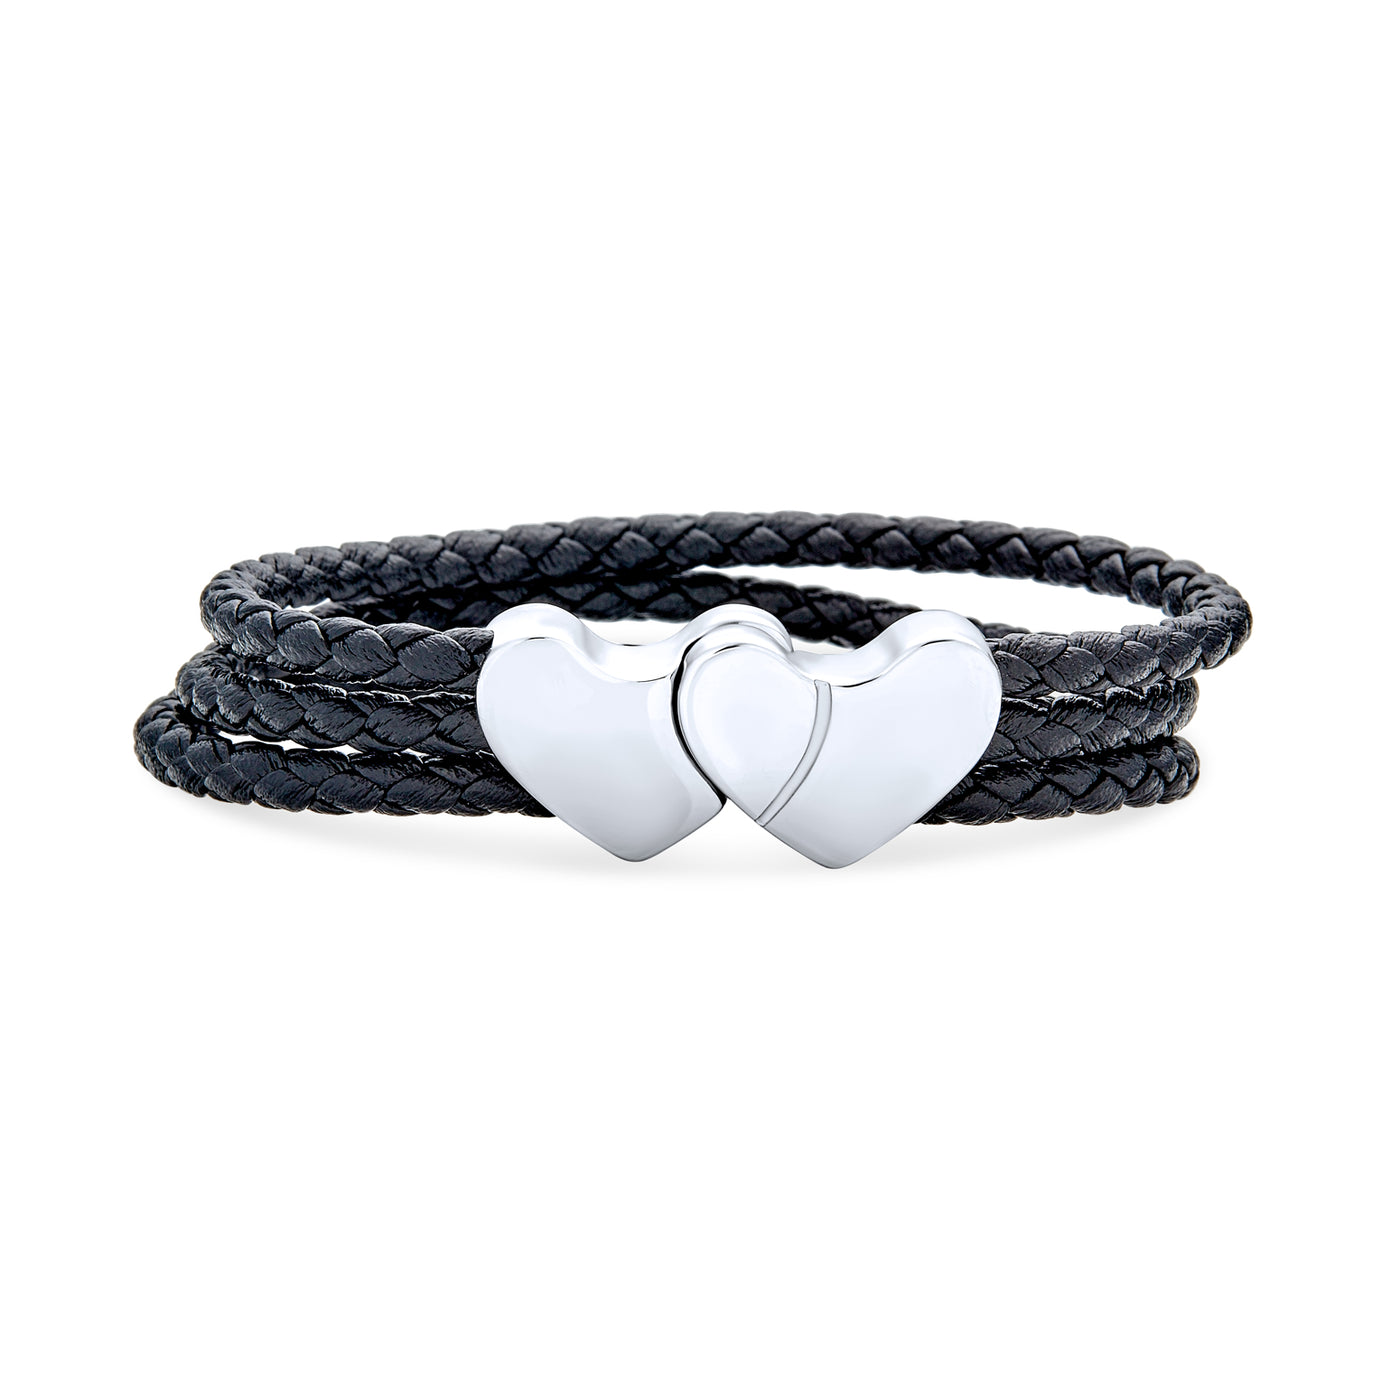 Interlocking Heart Black Strand Woven Leather Bracelet Stainless Steel